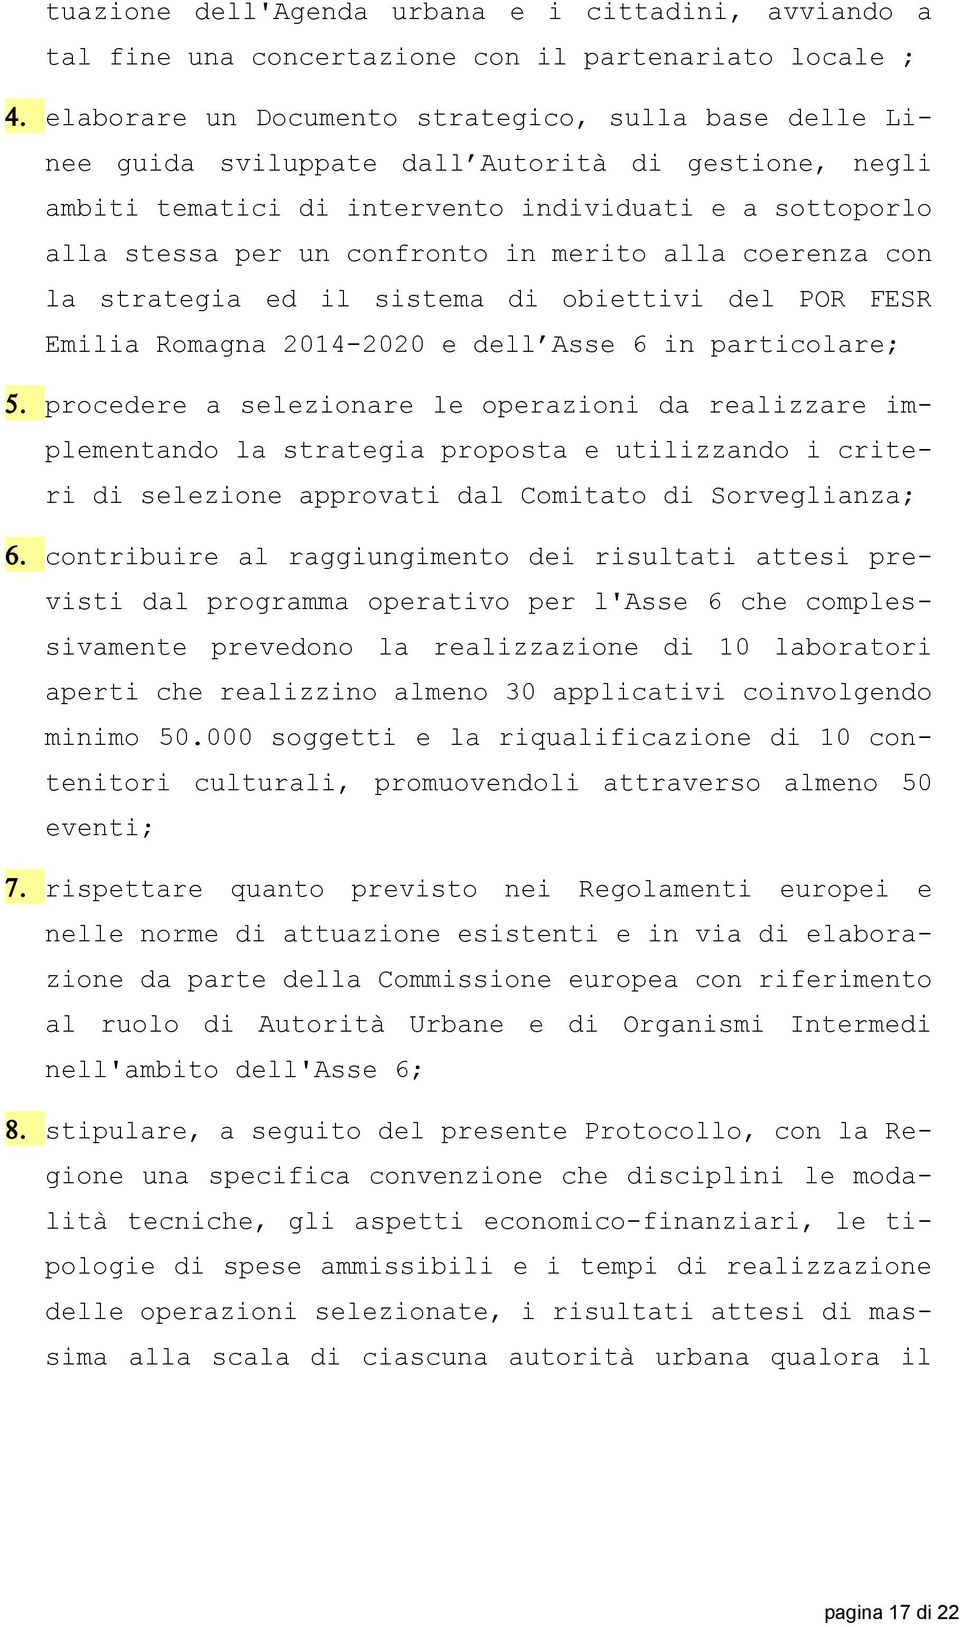 Romagna 2014-2020 e dell Asse 6 in particolare; procedere a selezionare le operazioni da realizzare implementando la strategia proposta e utilizzando i criteri di selezione approvati dal Comitato di